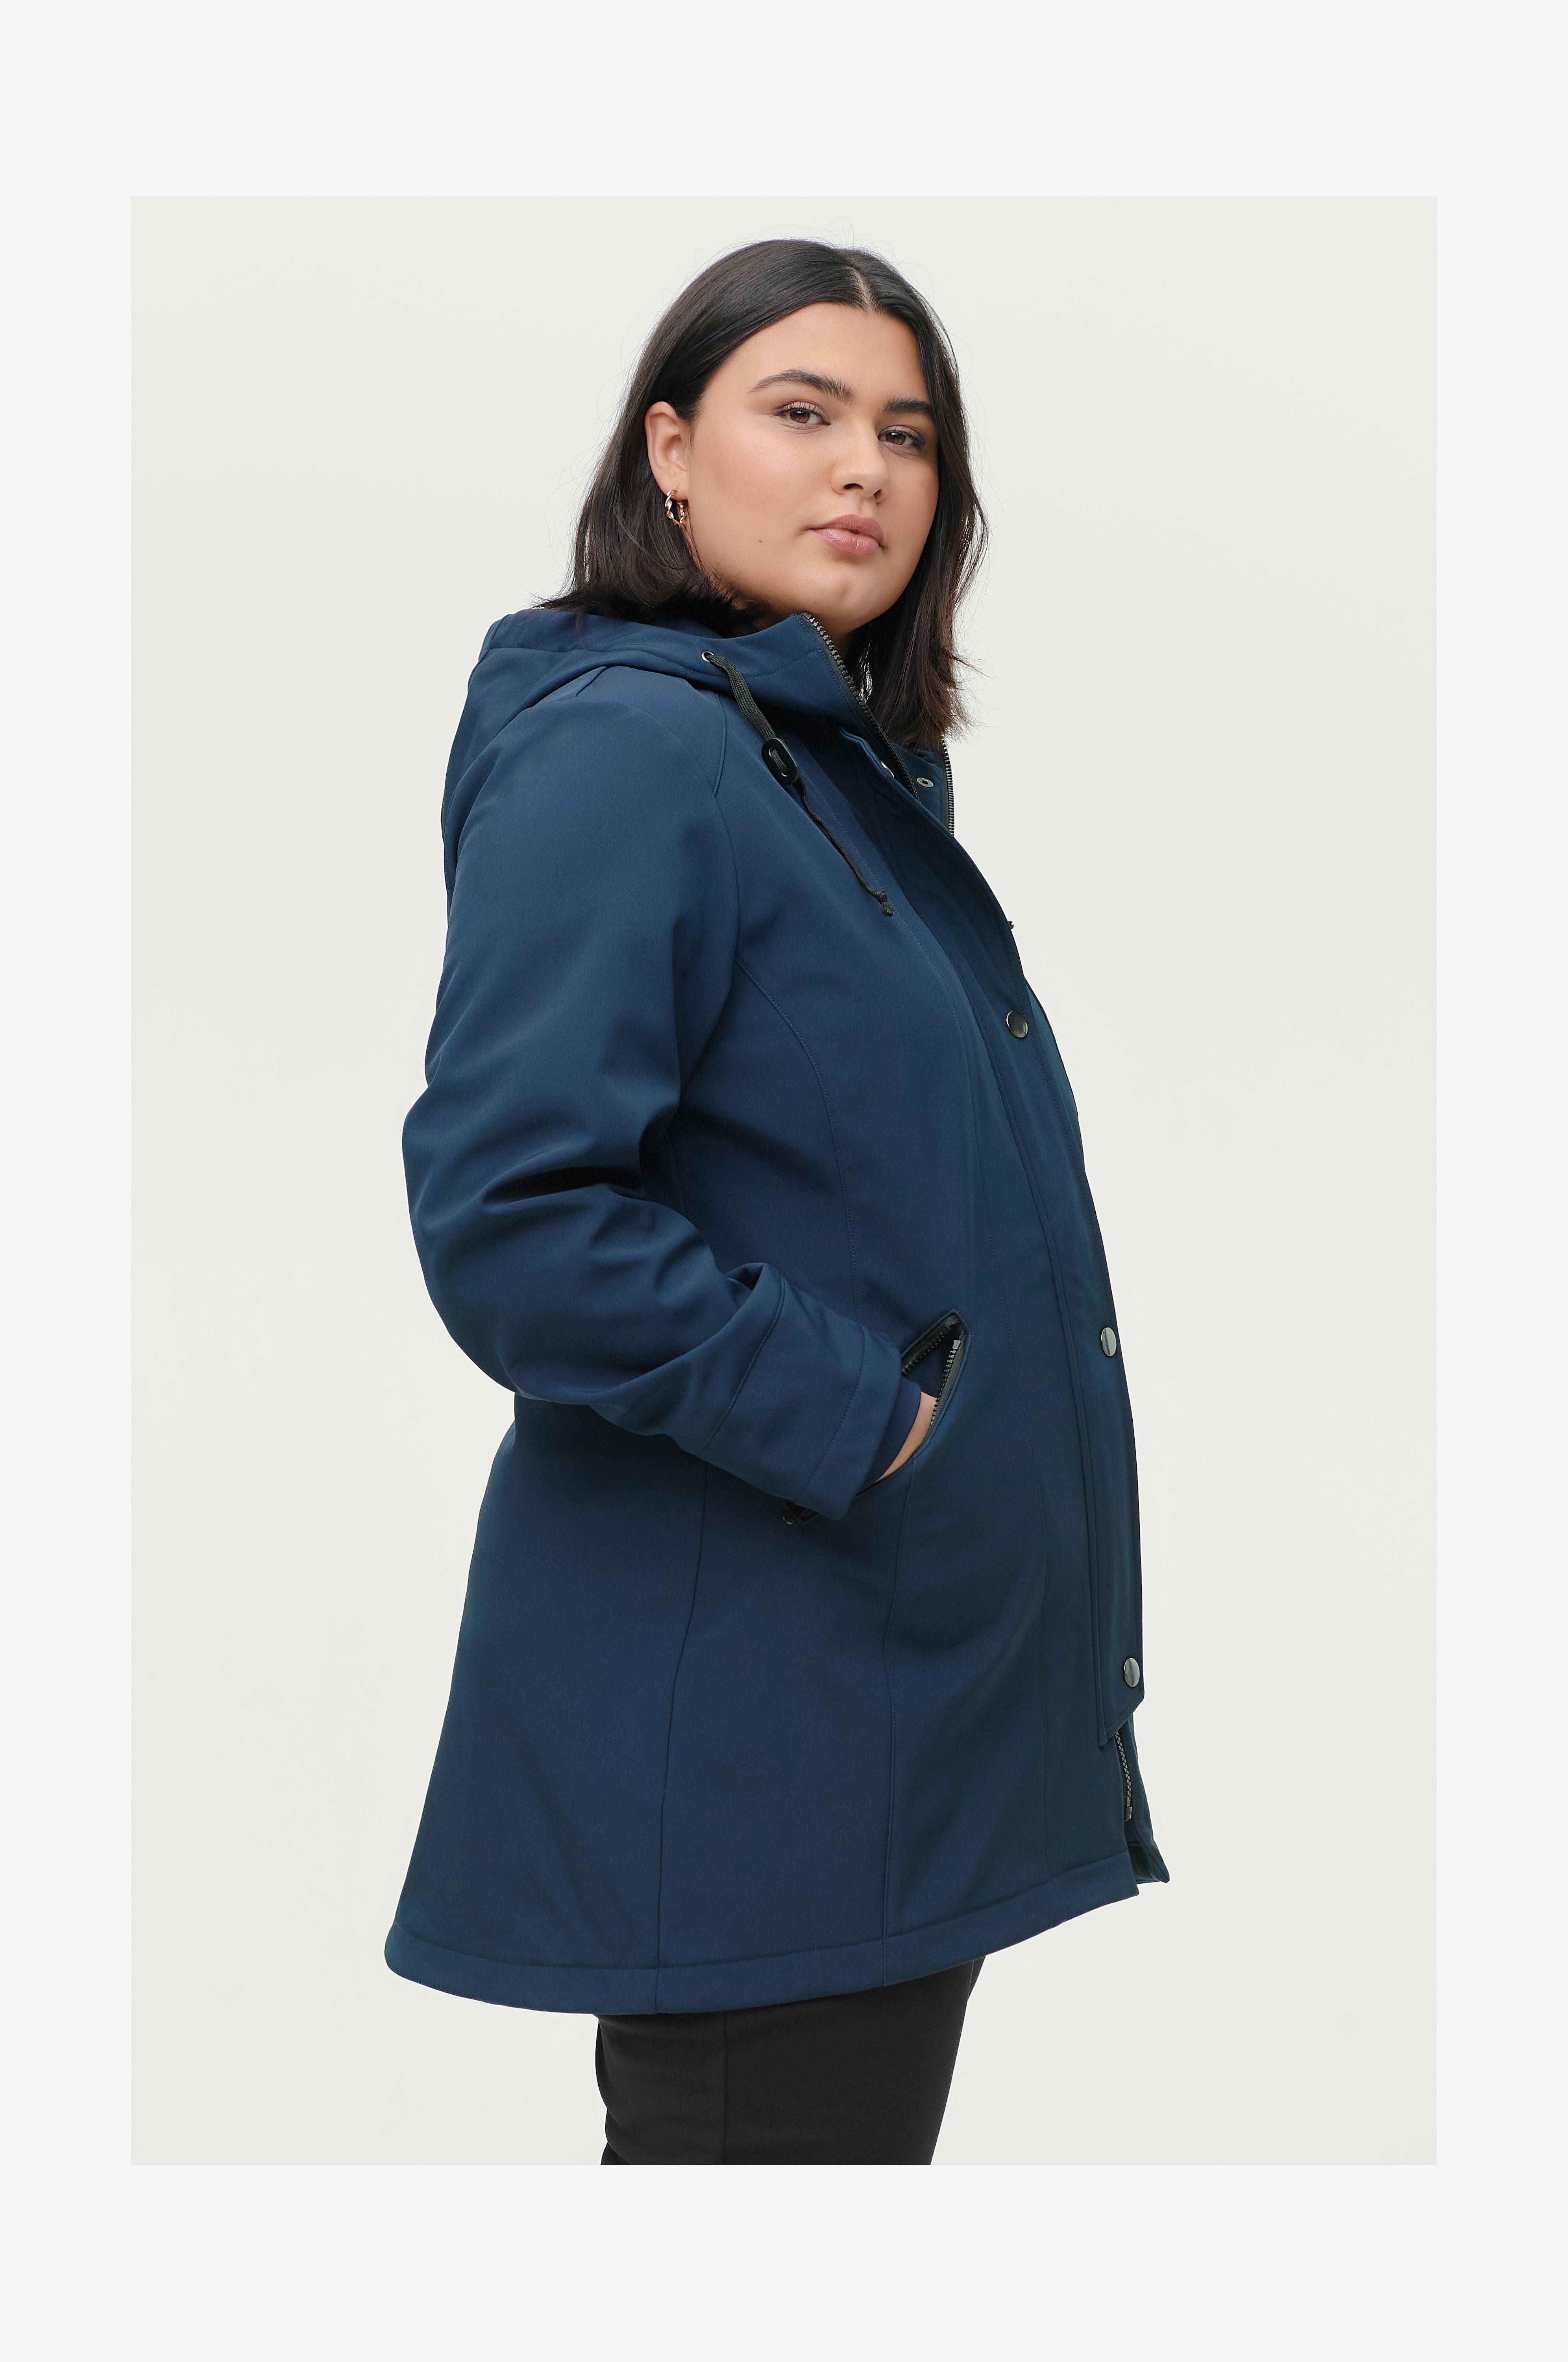 Adept Ledig Cornwall Plus size jakke - Find jakker i store størrelser - Køb her